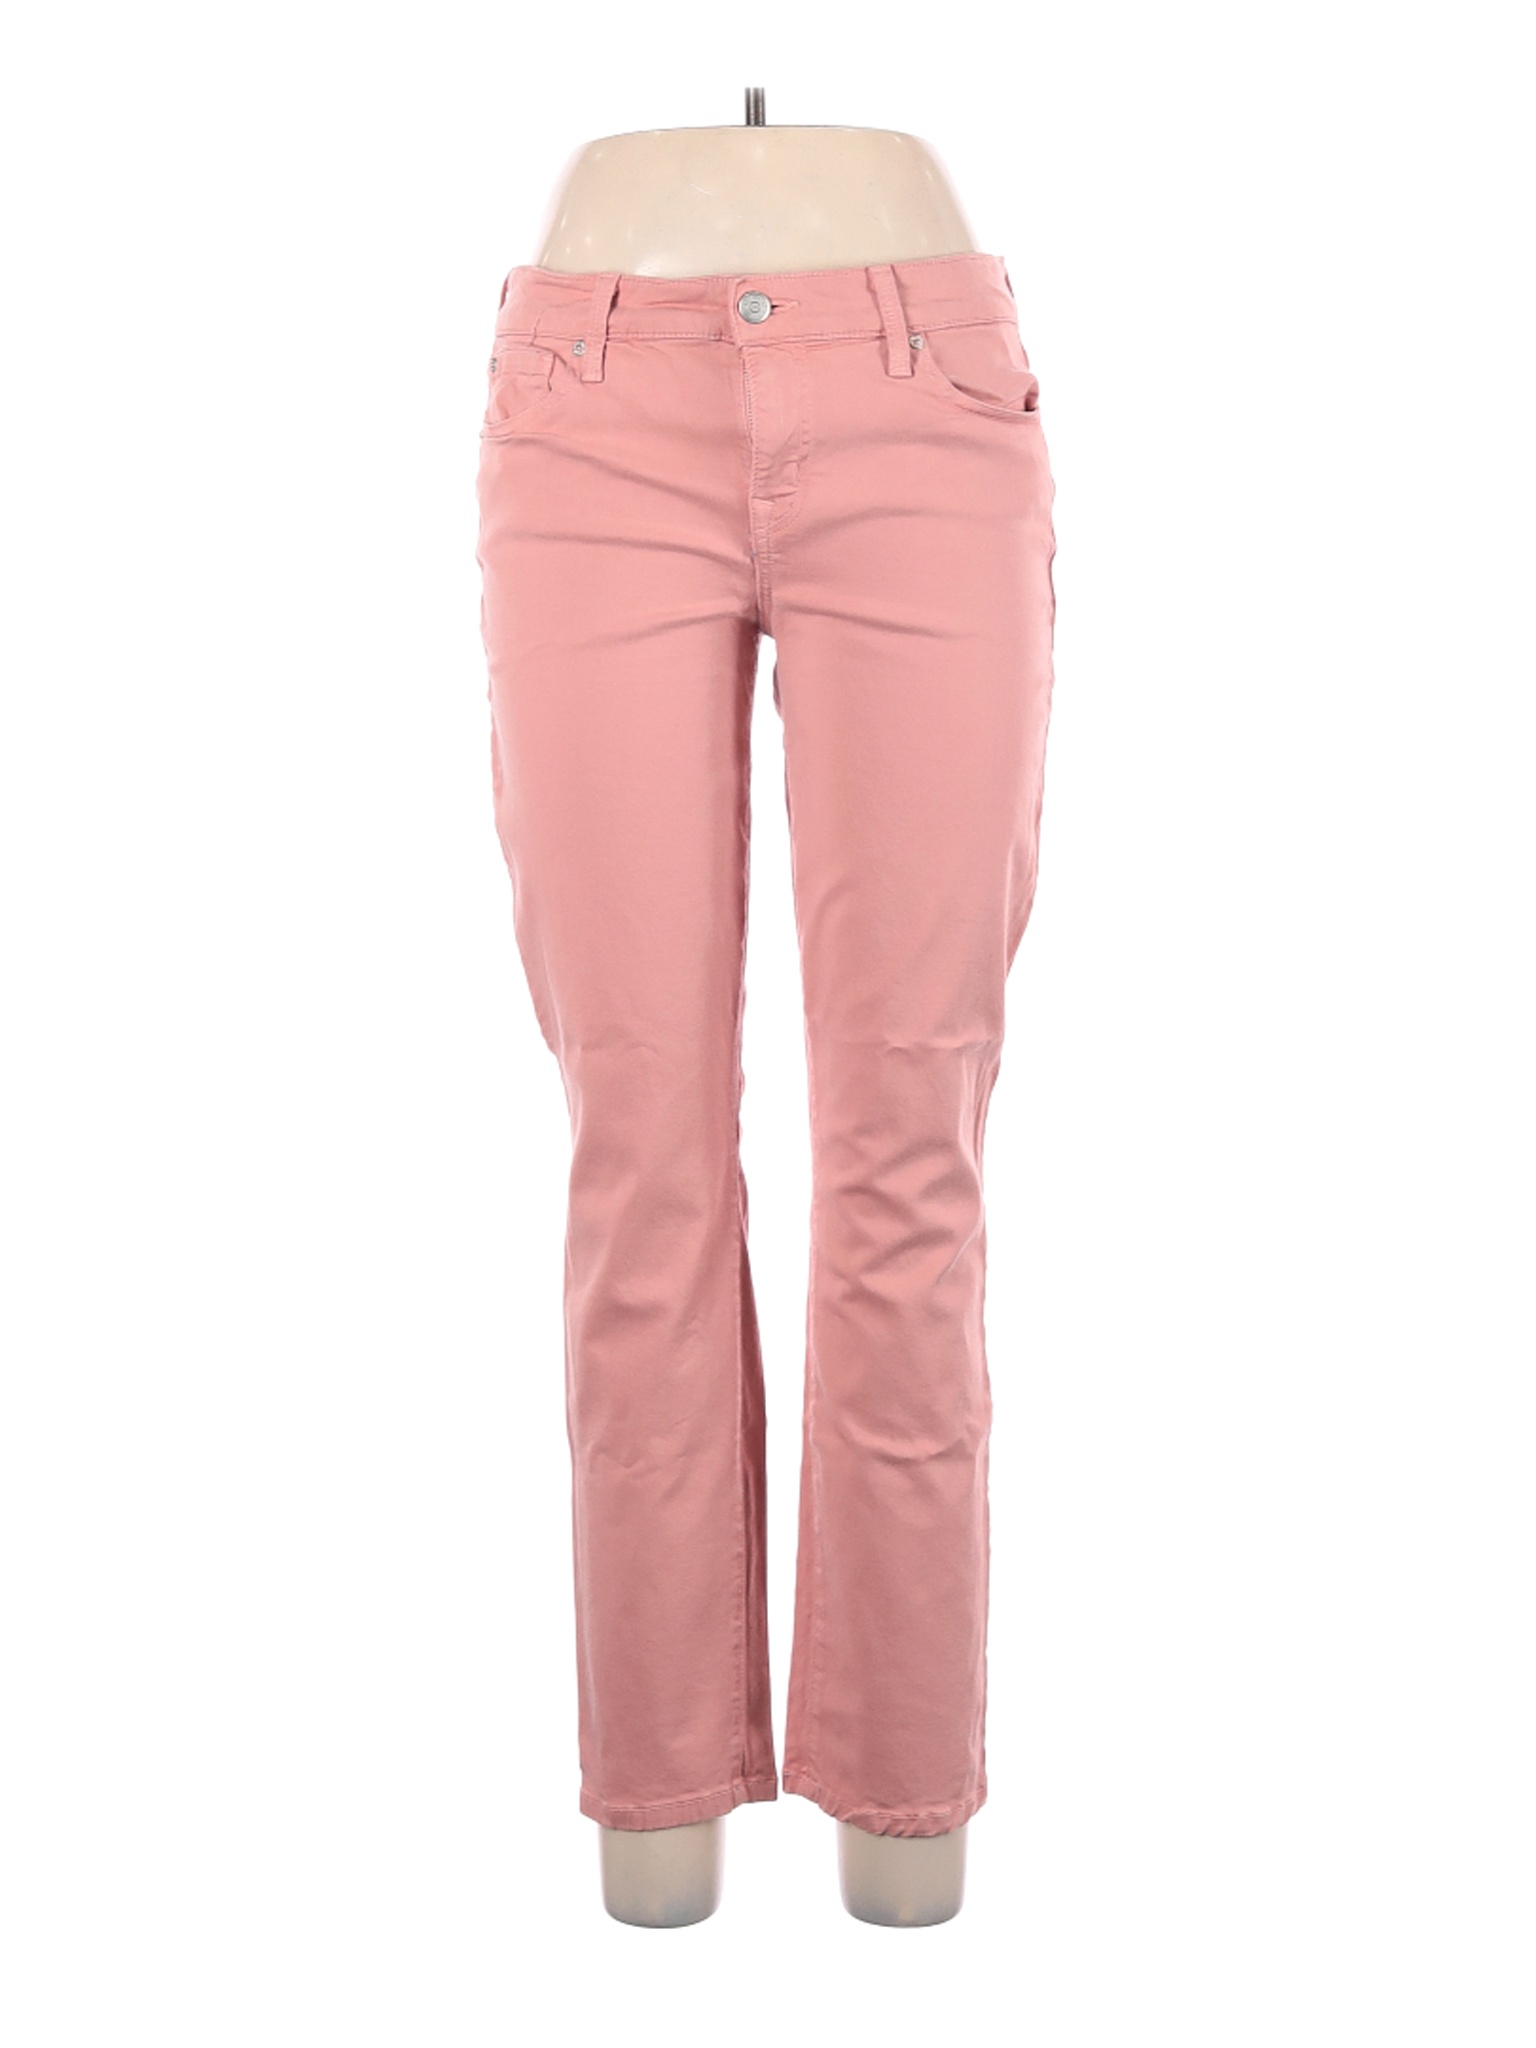 Level 99 Women Pink Jeans 31W | eBay